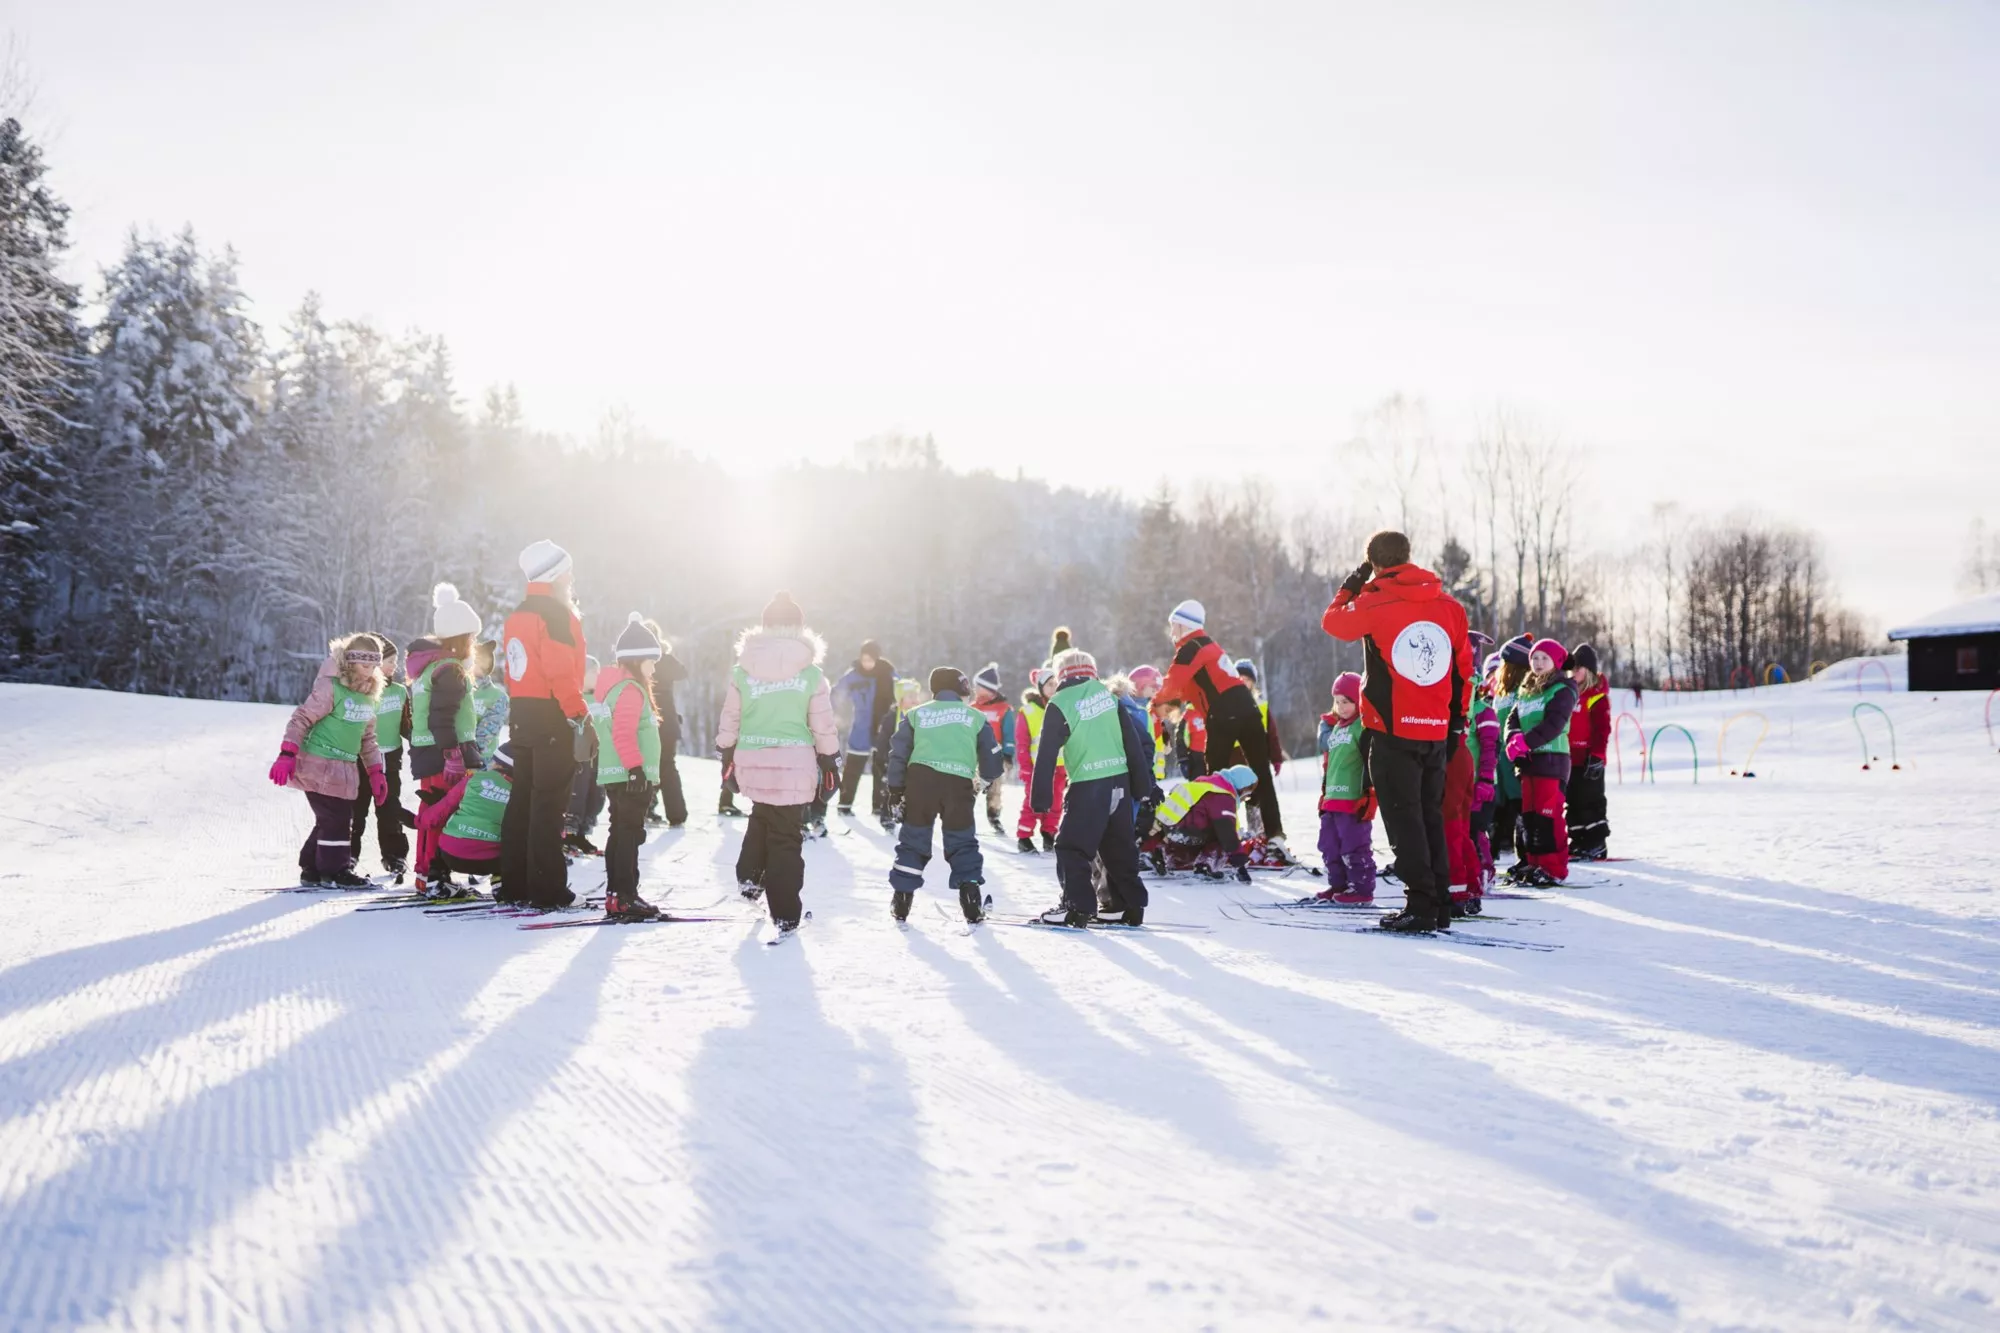 Skiforeningen Ski School in Norway, Europe | Snowboarding,Skiing - Rated 0.8